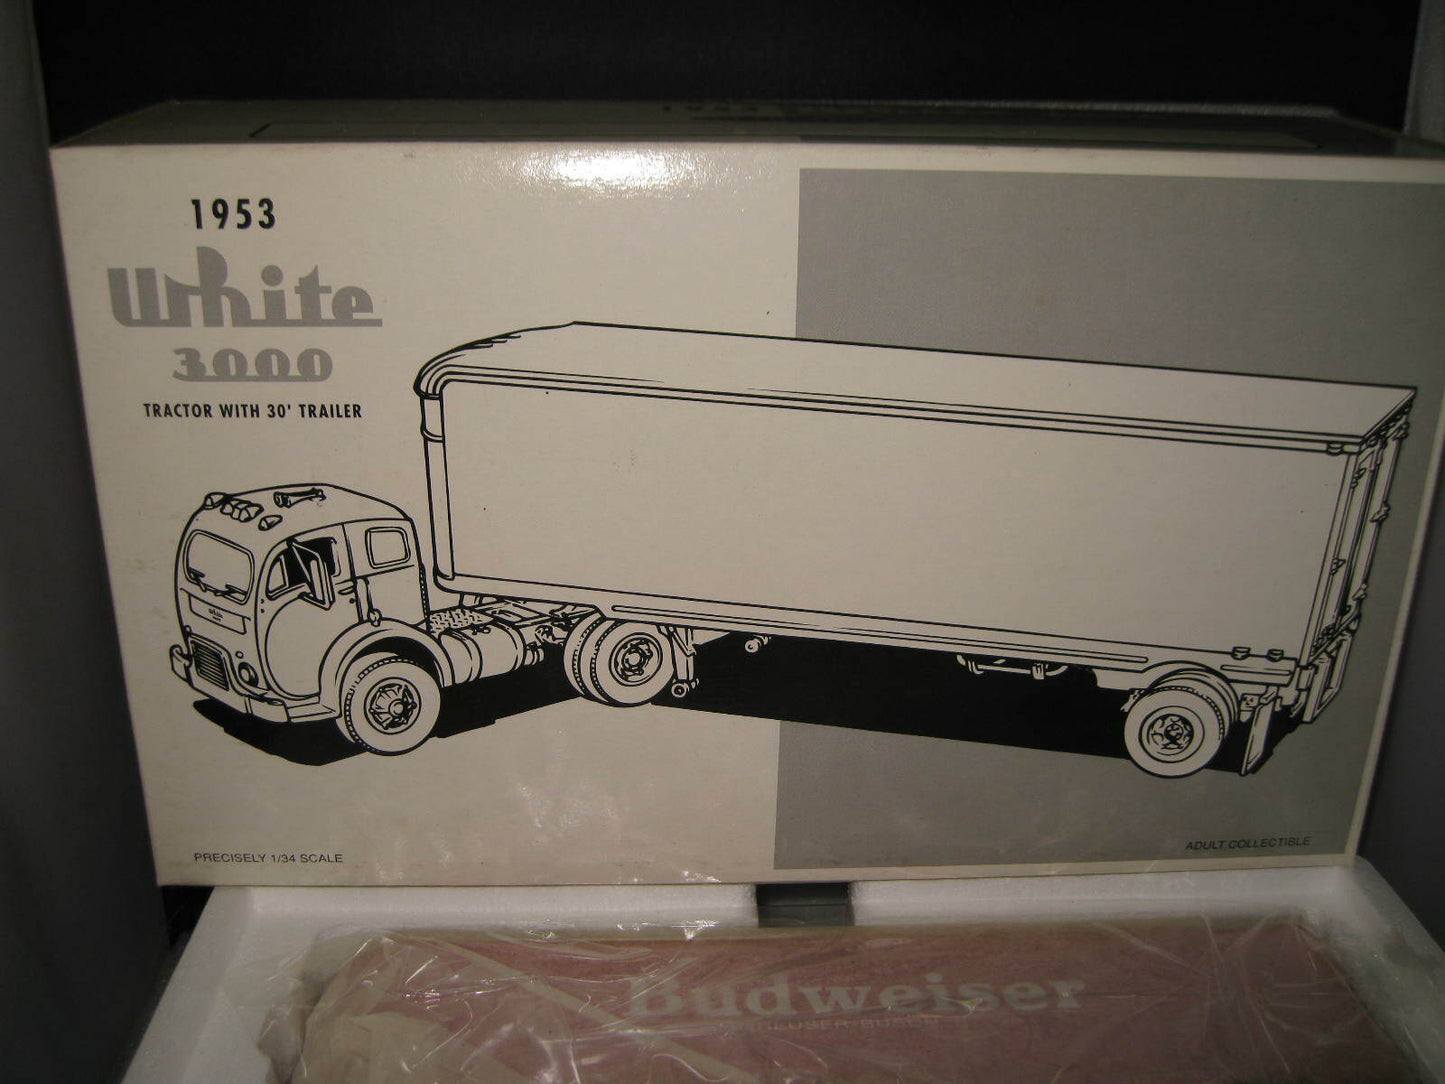 1.34 1St First Gear 1953 White 3000 Truck & Trailer  Budweiser Beer  #19-1912